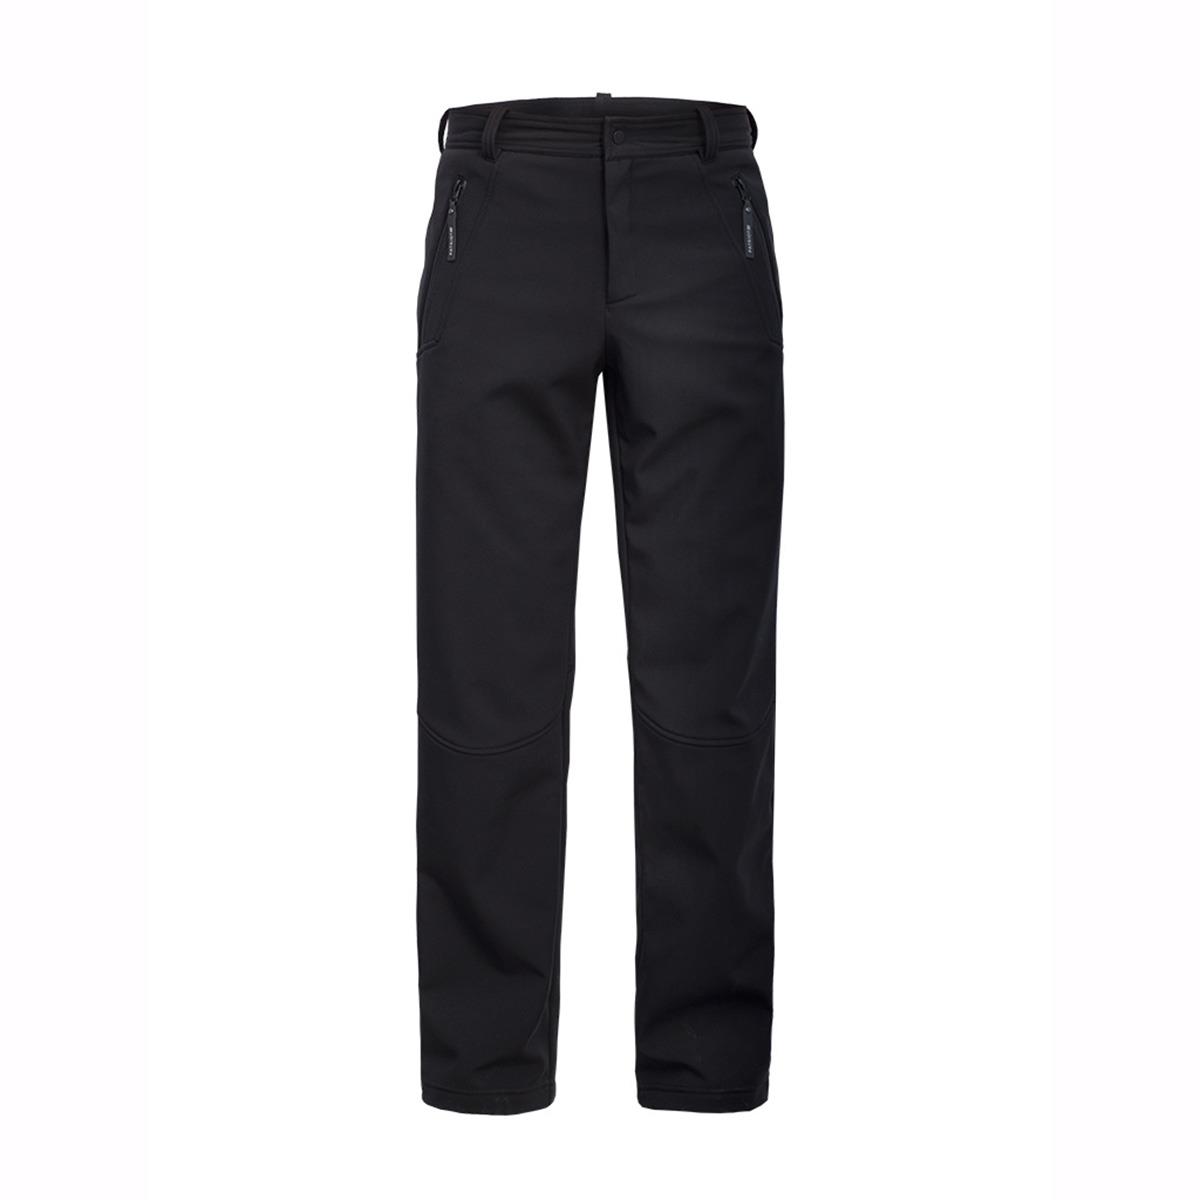 Брюки мужские Алдан Н (2228) Росомаха куртка рабочая neo softshell цвет черный серый размер s 48 рост 164 170 см